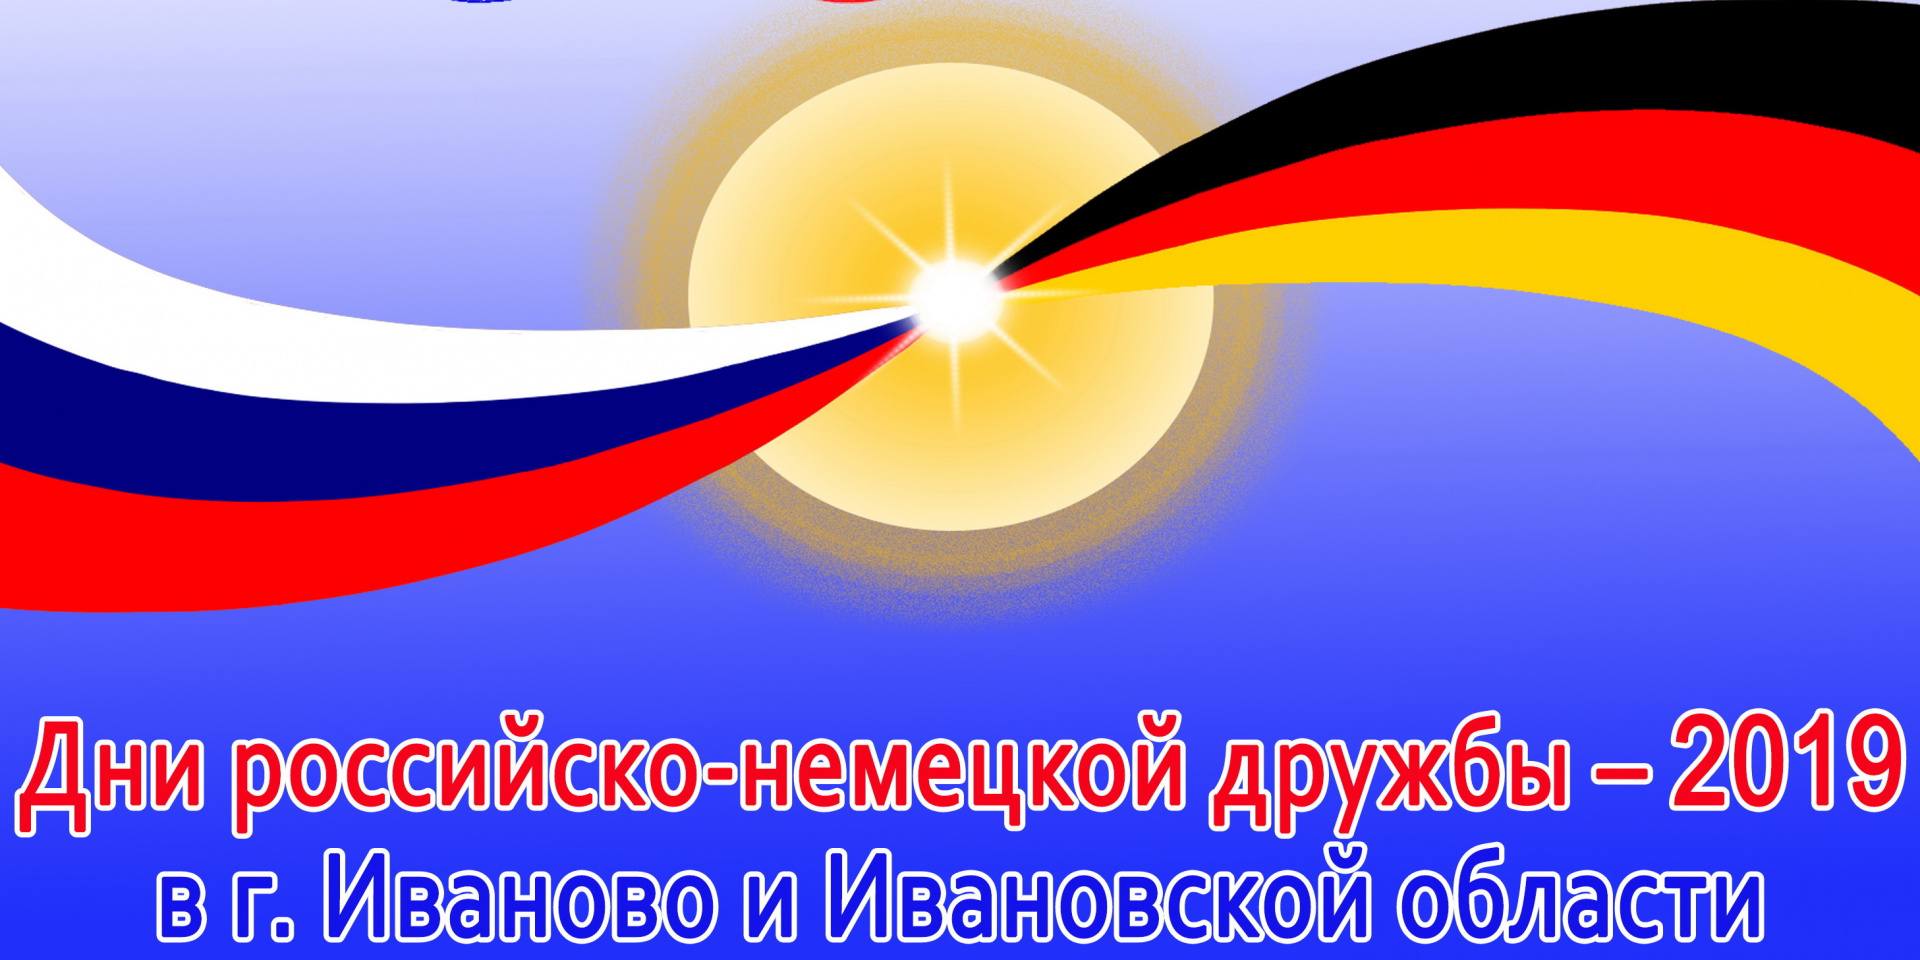 В Ивановской области открываются Дни российско-немецкой дружбы 